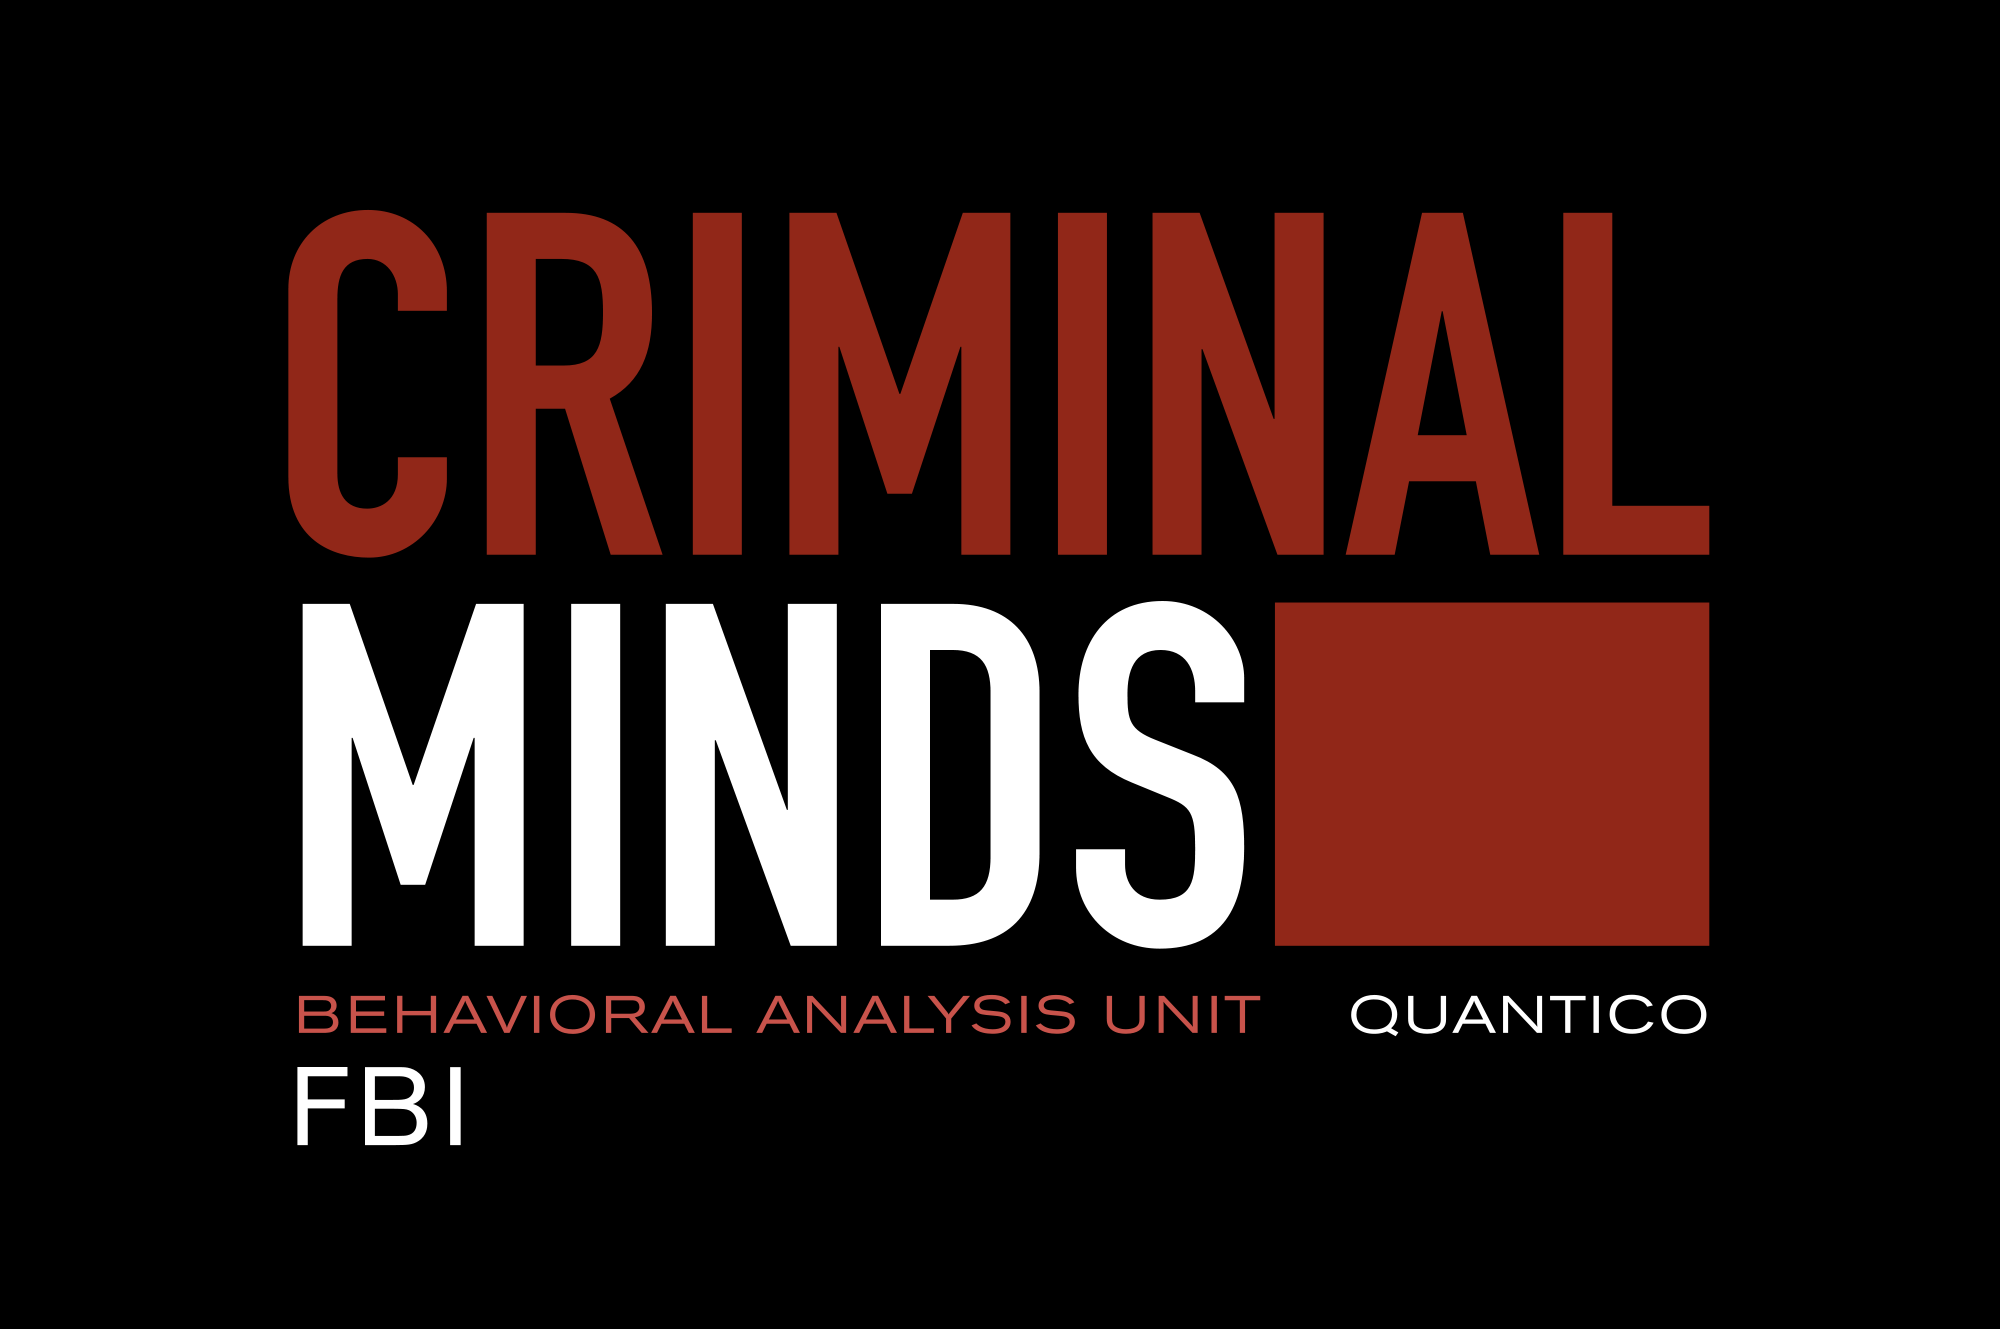 Criminal minds logo